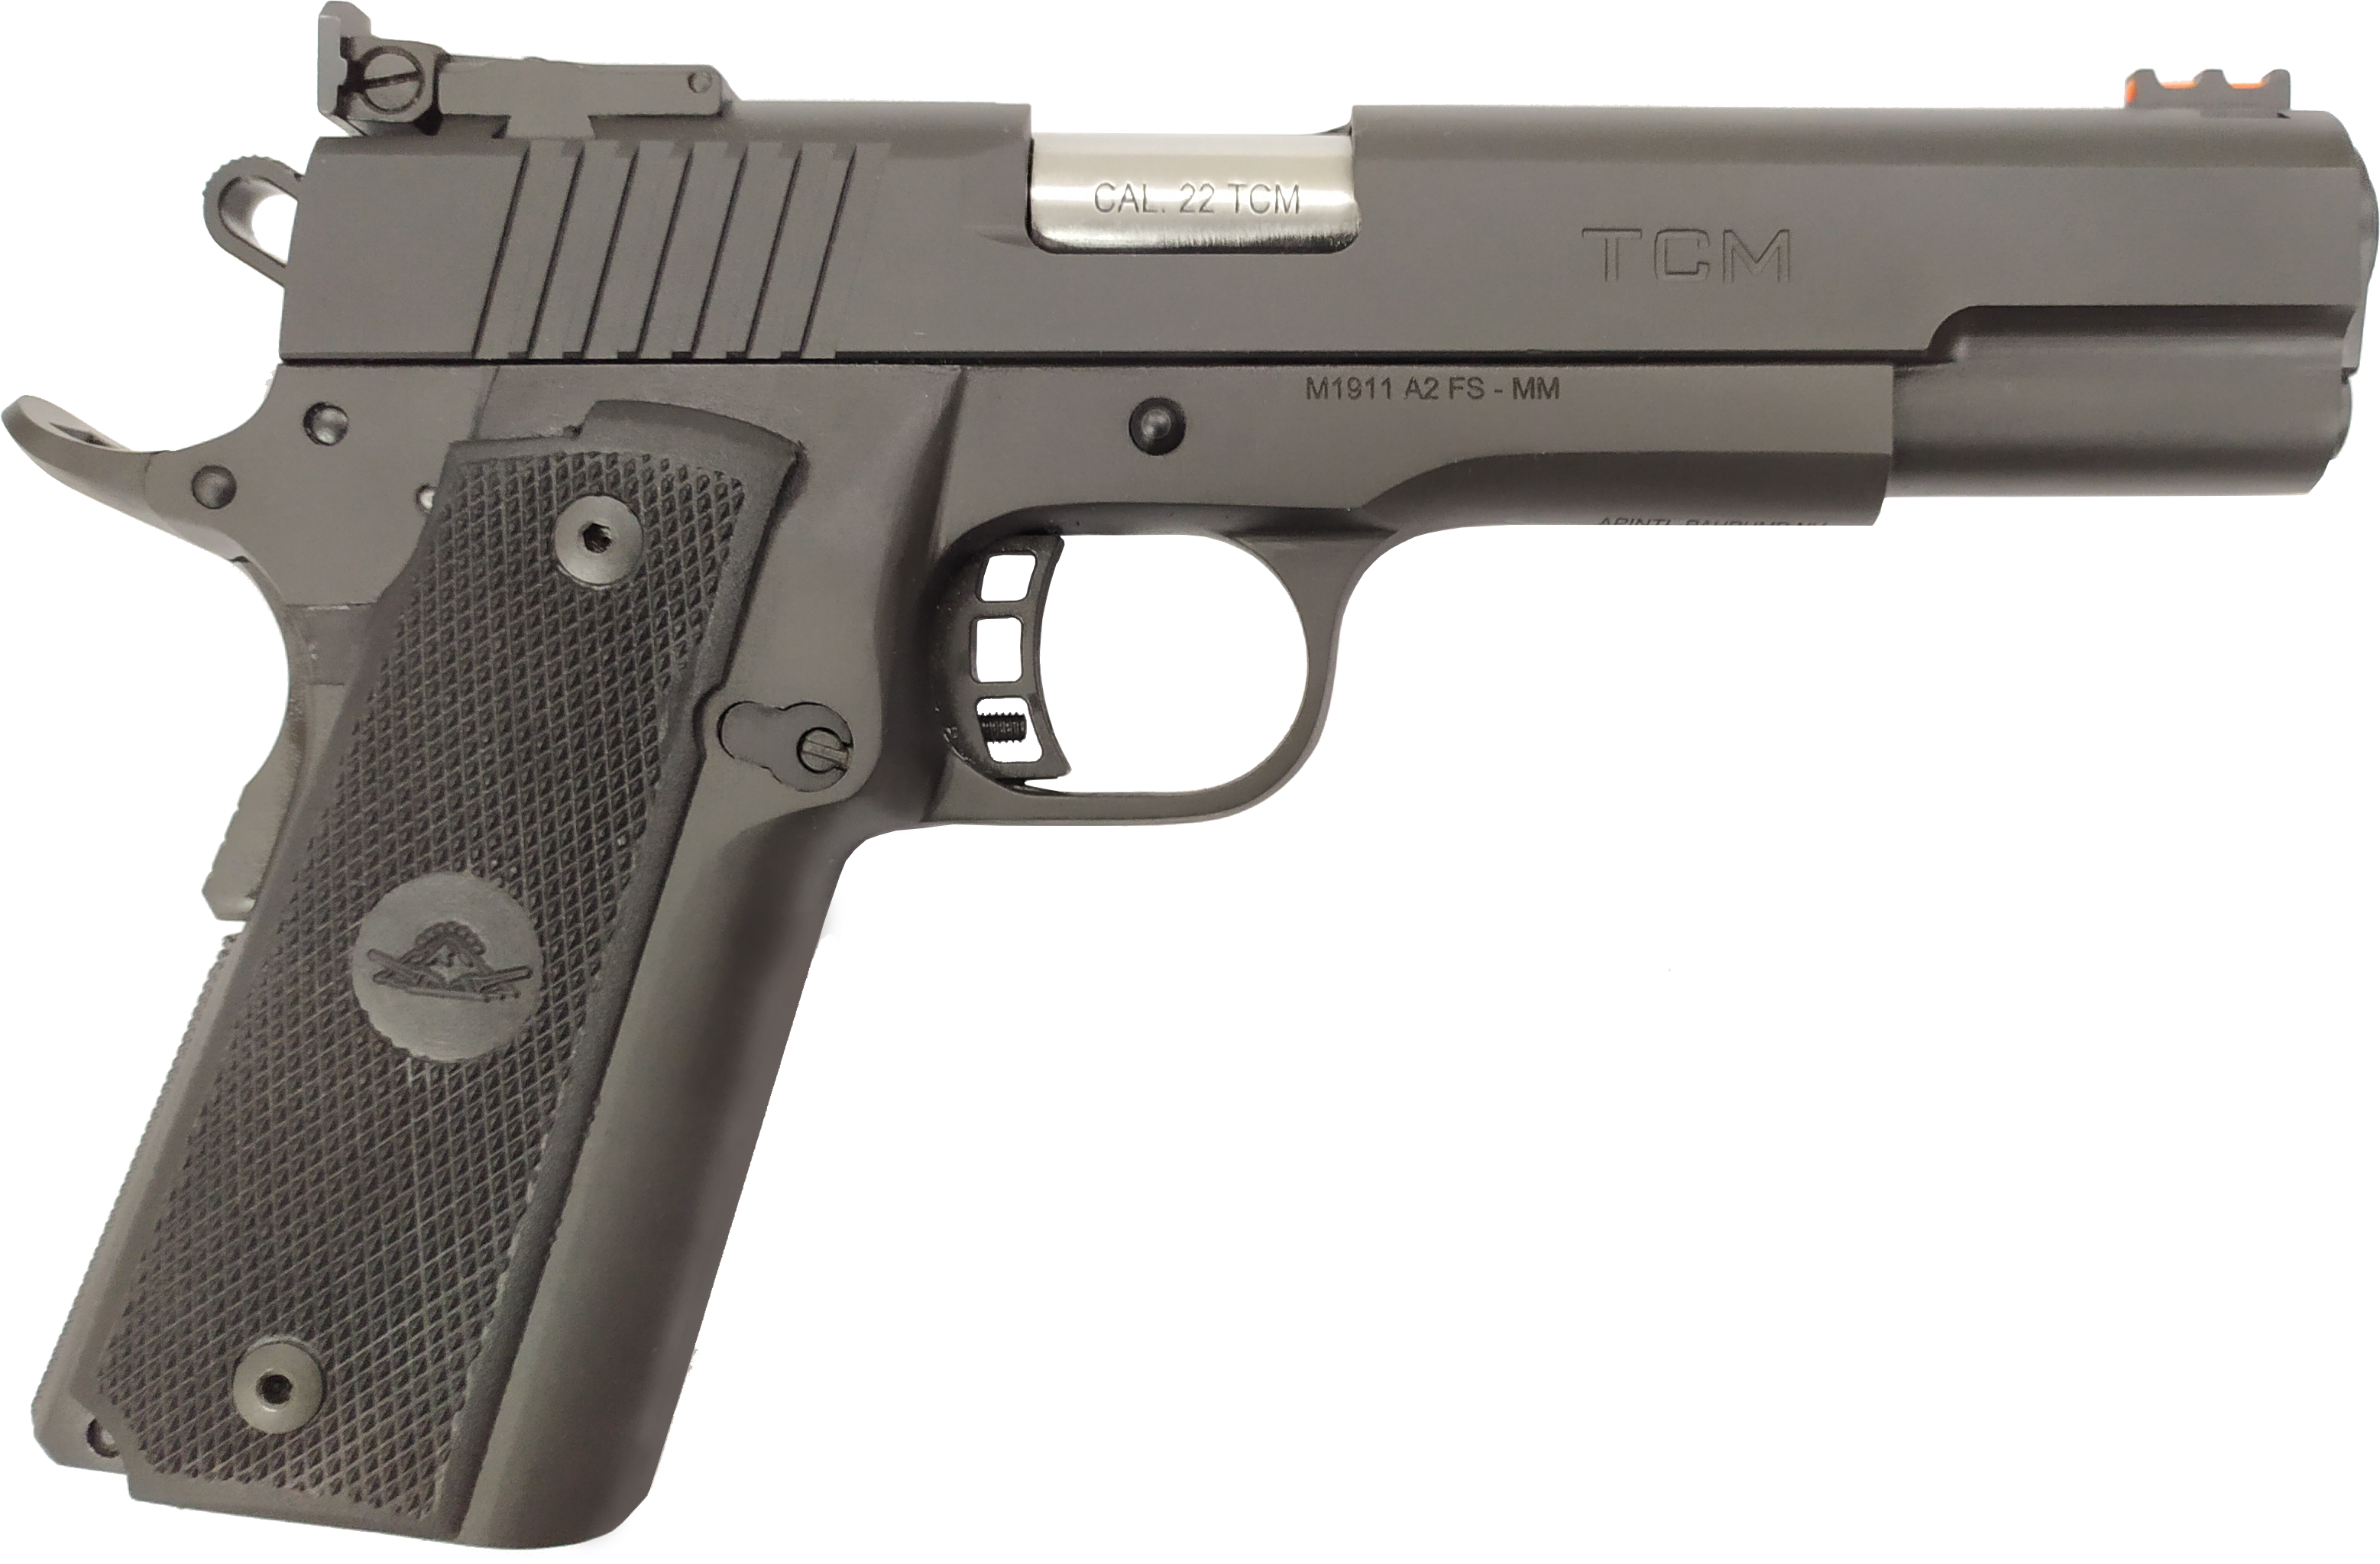 RIA*M1911 A2 FS 22TCM 5"" 17RD - Handguns